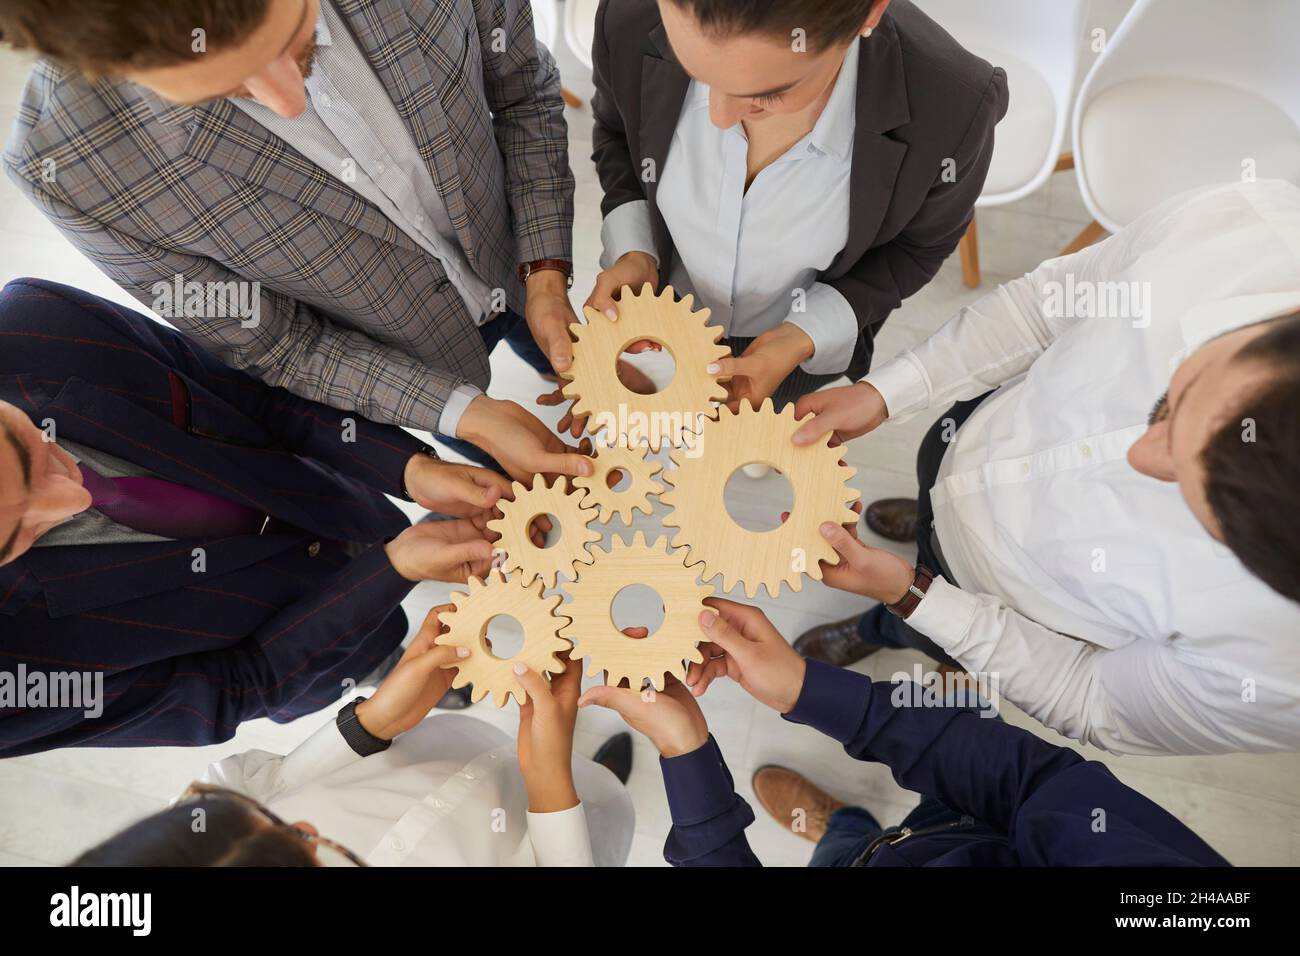 Die Kollegen in einer Ausbildung haben Holzgetriebe zusammengelegt, um zu lernen, zusammenzuarbeiten. Stockfoto